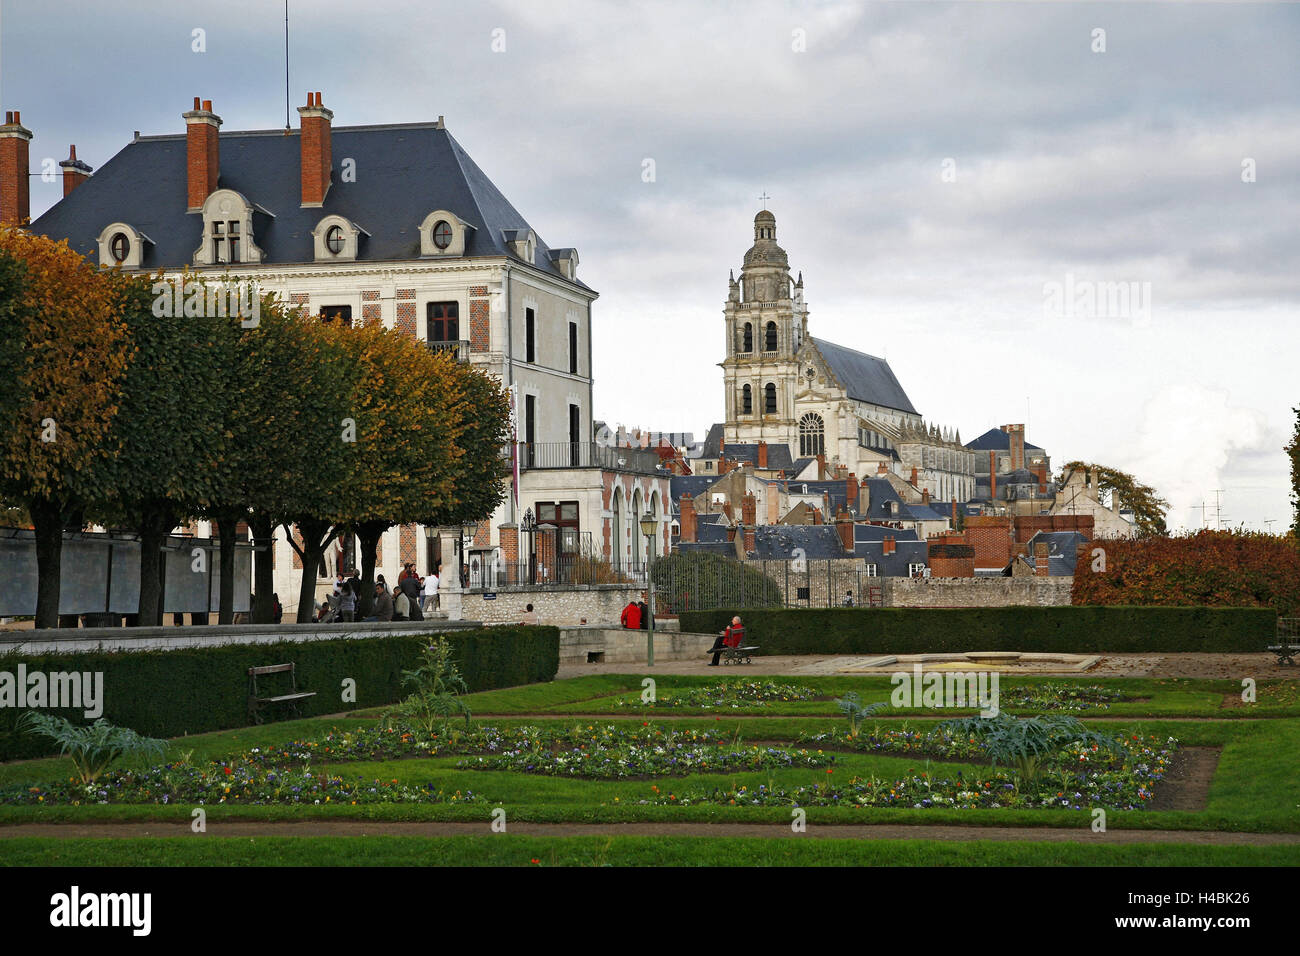 France, Loir-et-Cher, Blois, cathedral, park, people, Stock Photo